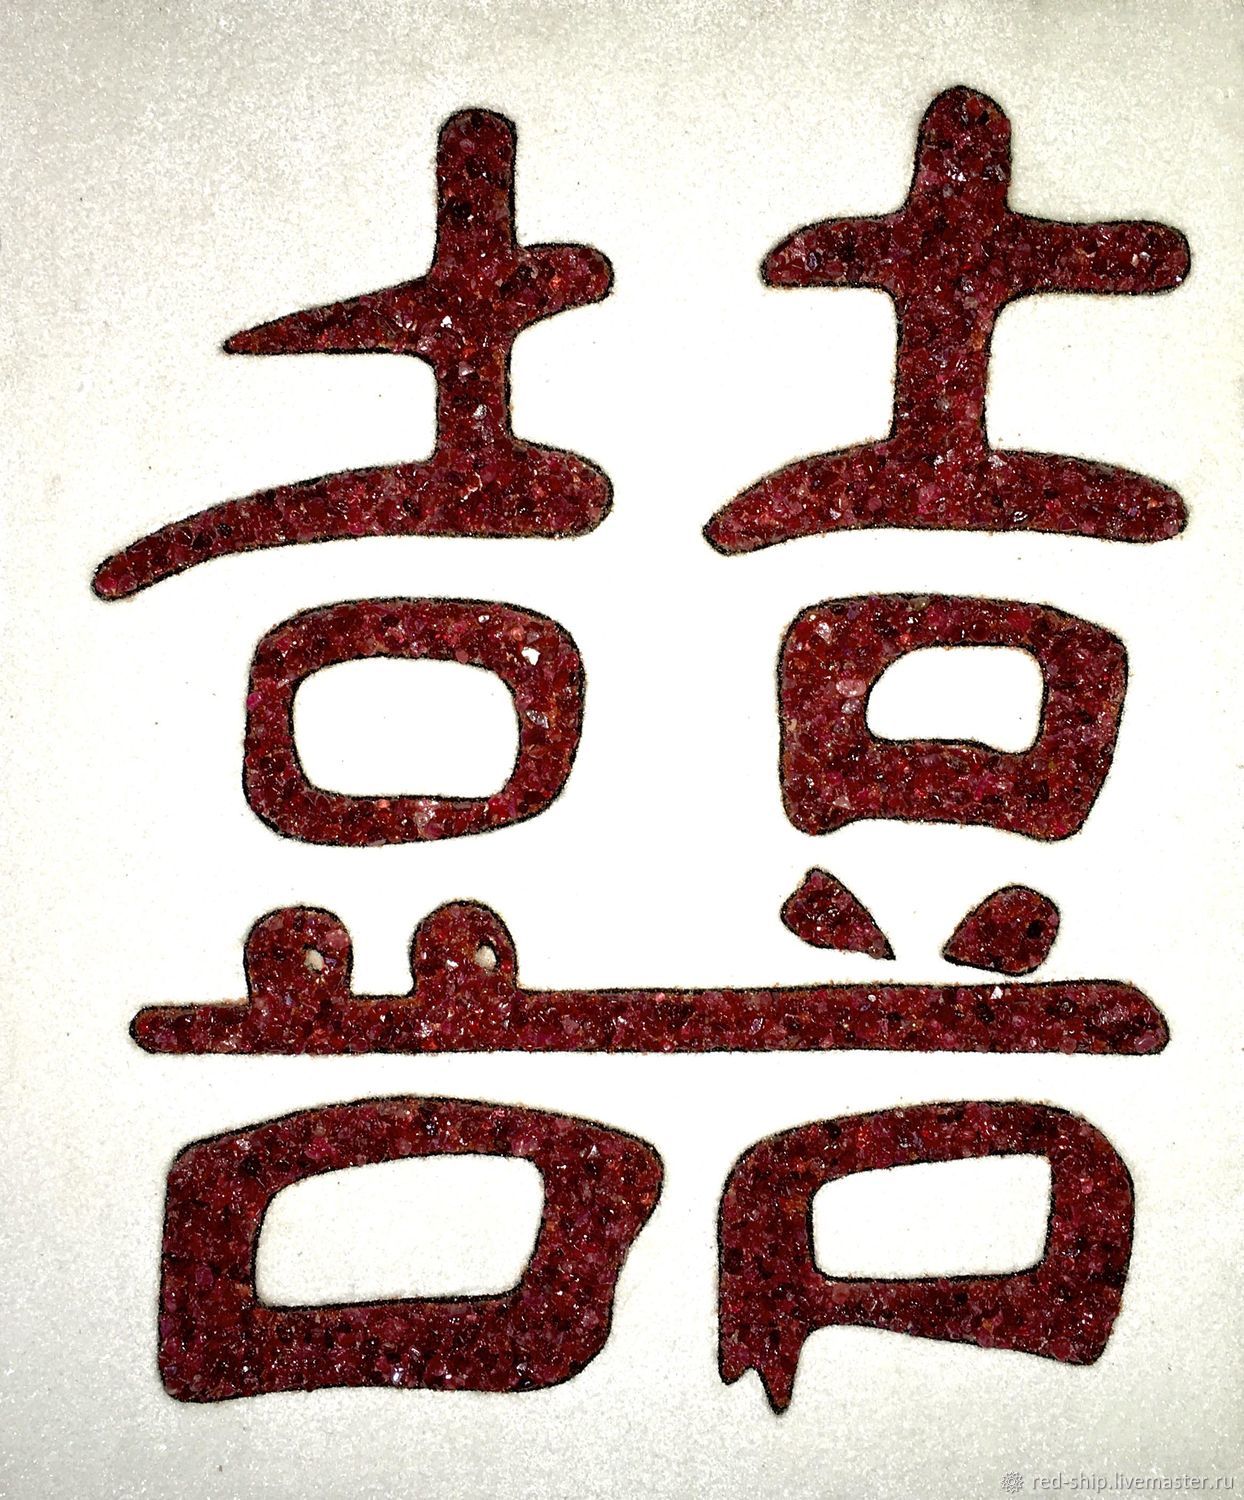 китайский иероглиф двойное счастье фото